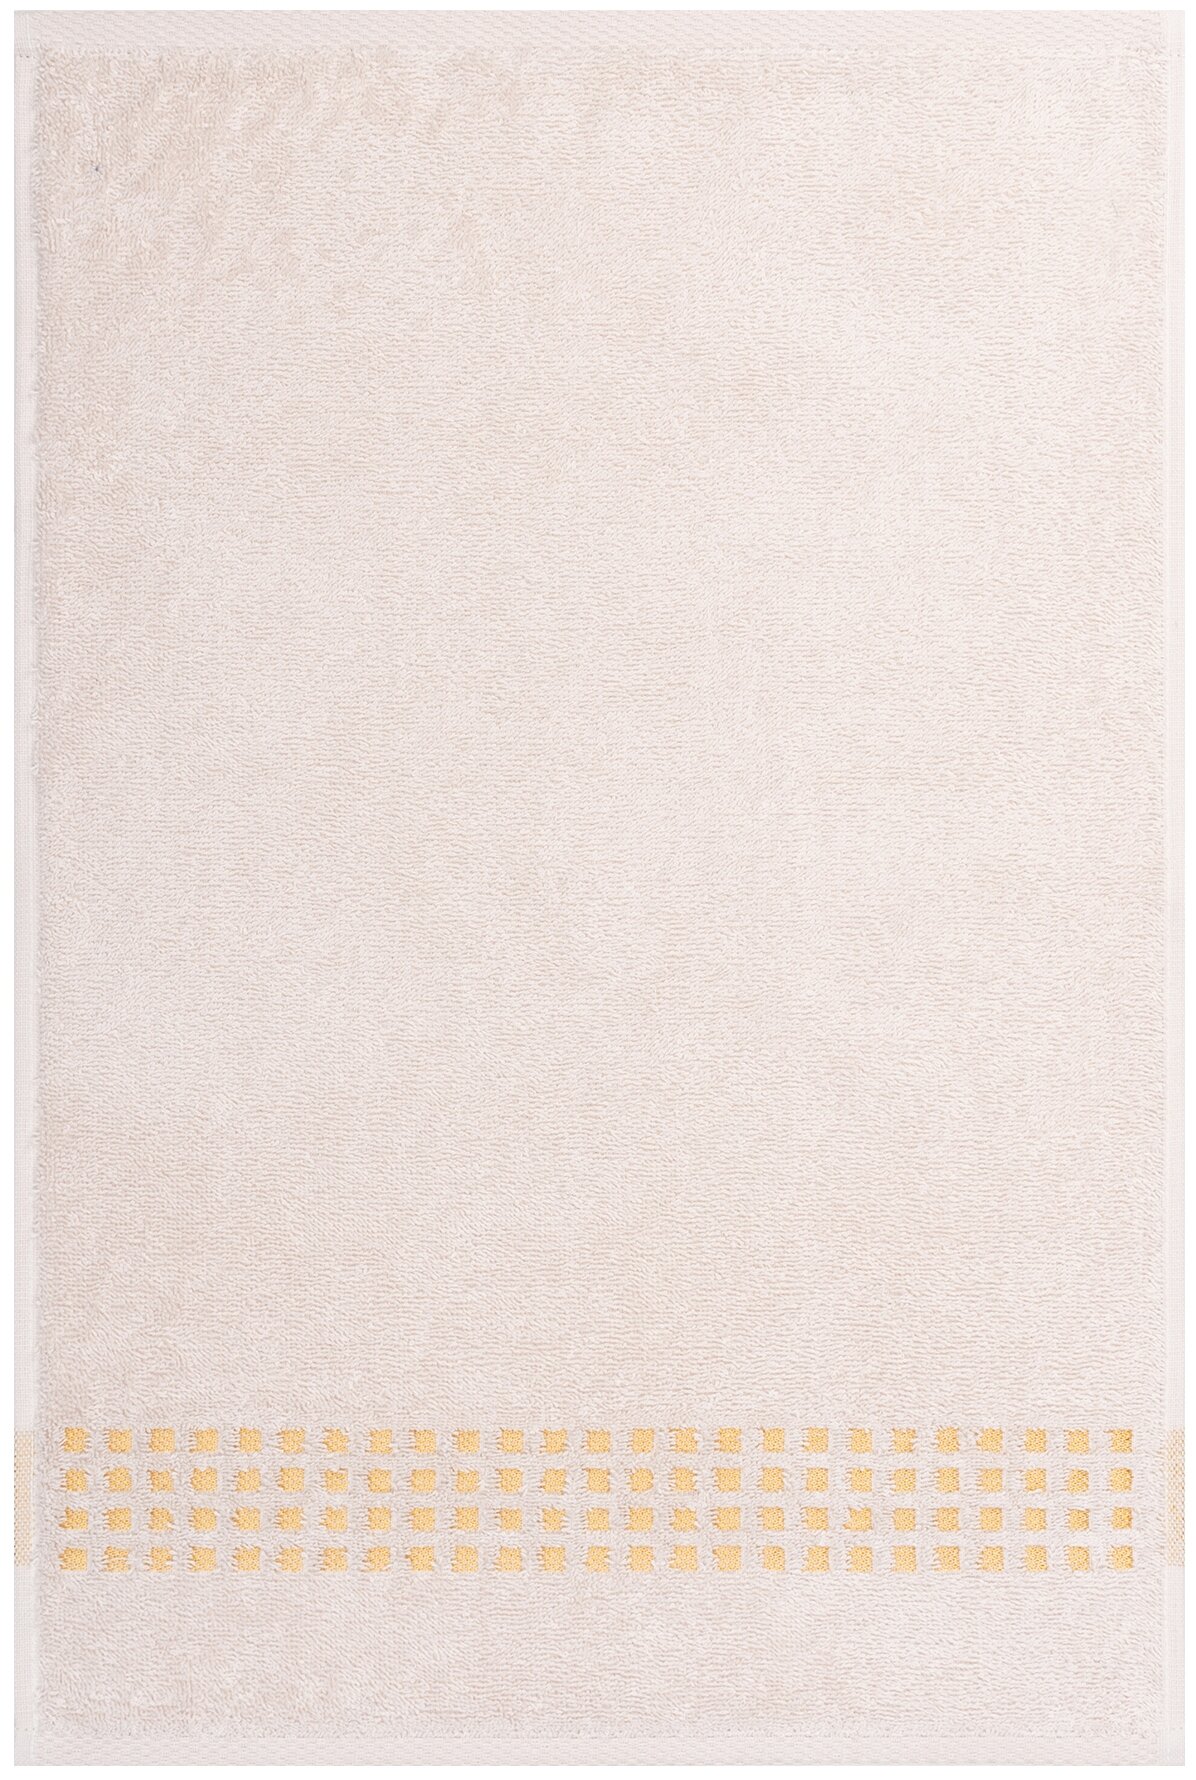 Салфетка махровая, полотенце для лица и рук, Донецкая мануфактура,Graph, цвет:молочный 40Х60 см,100% хлопок - фотография № 1